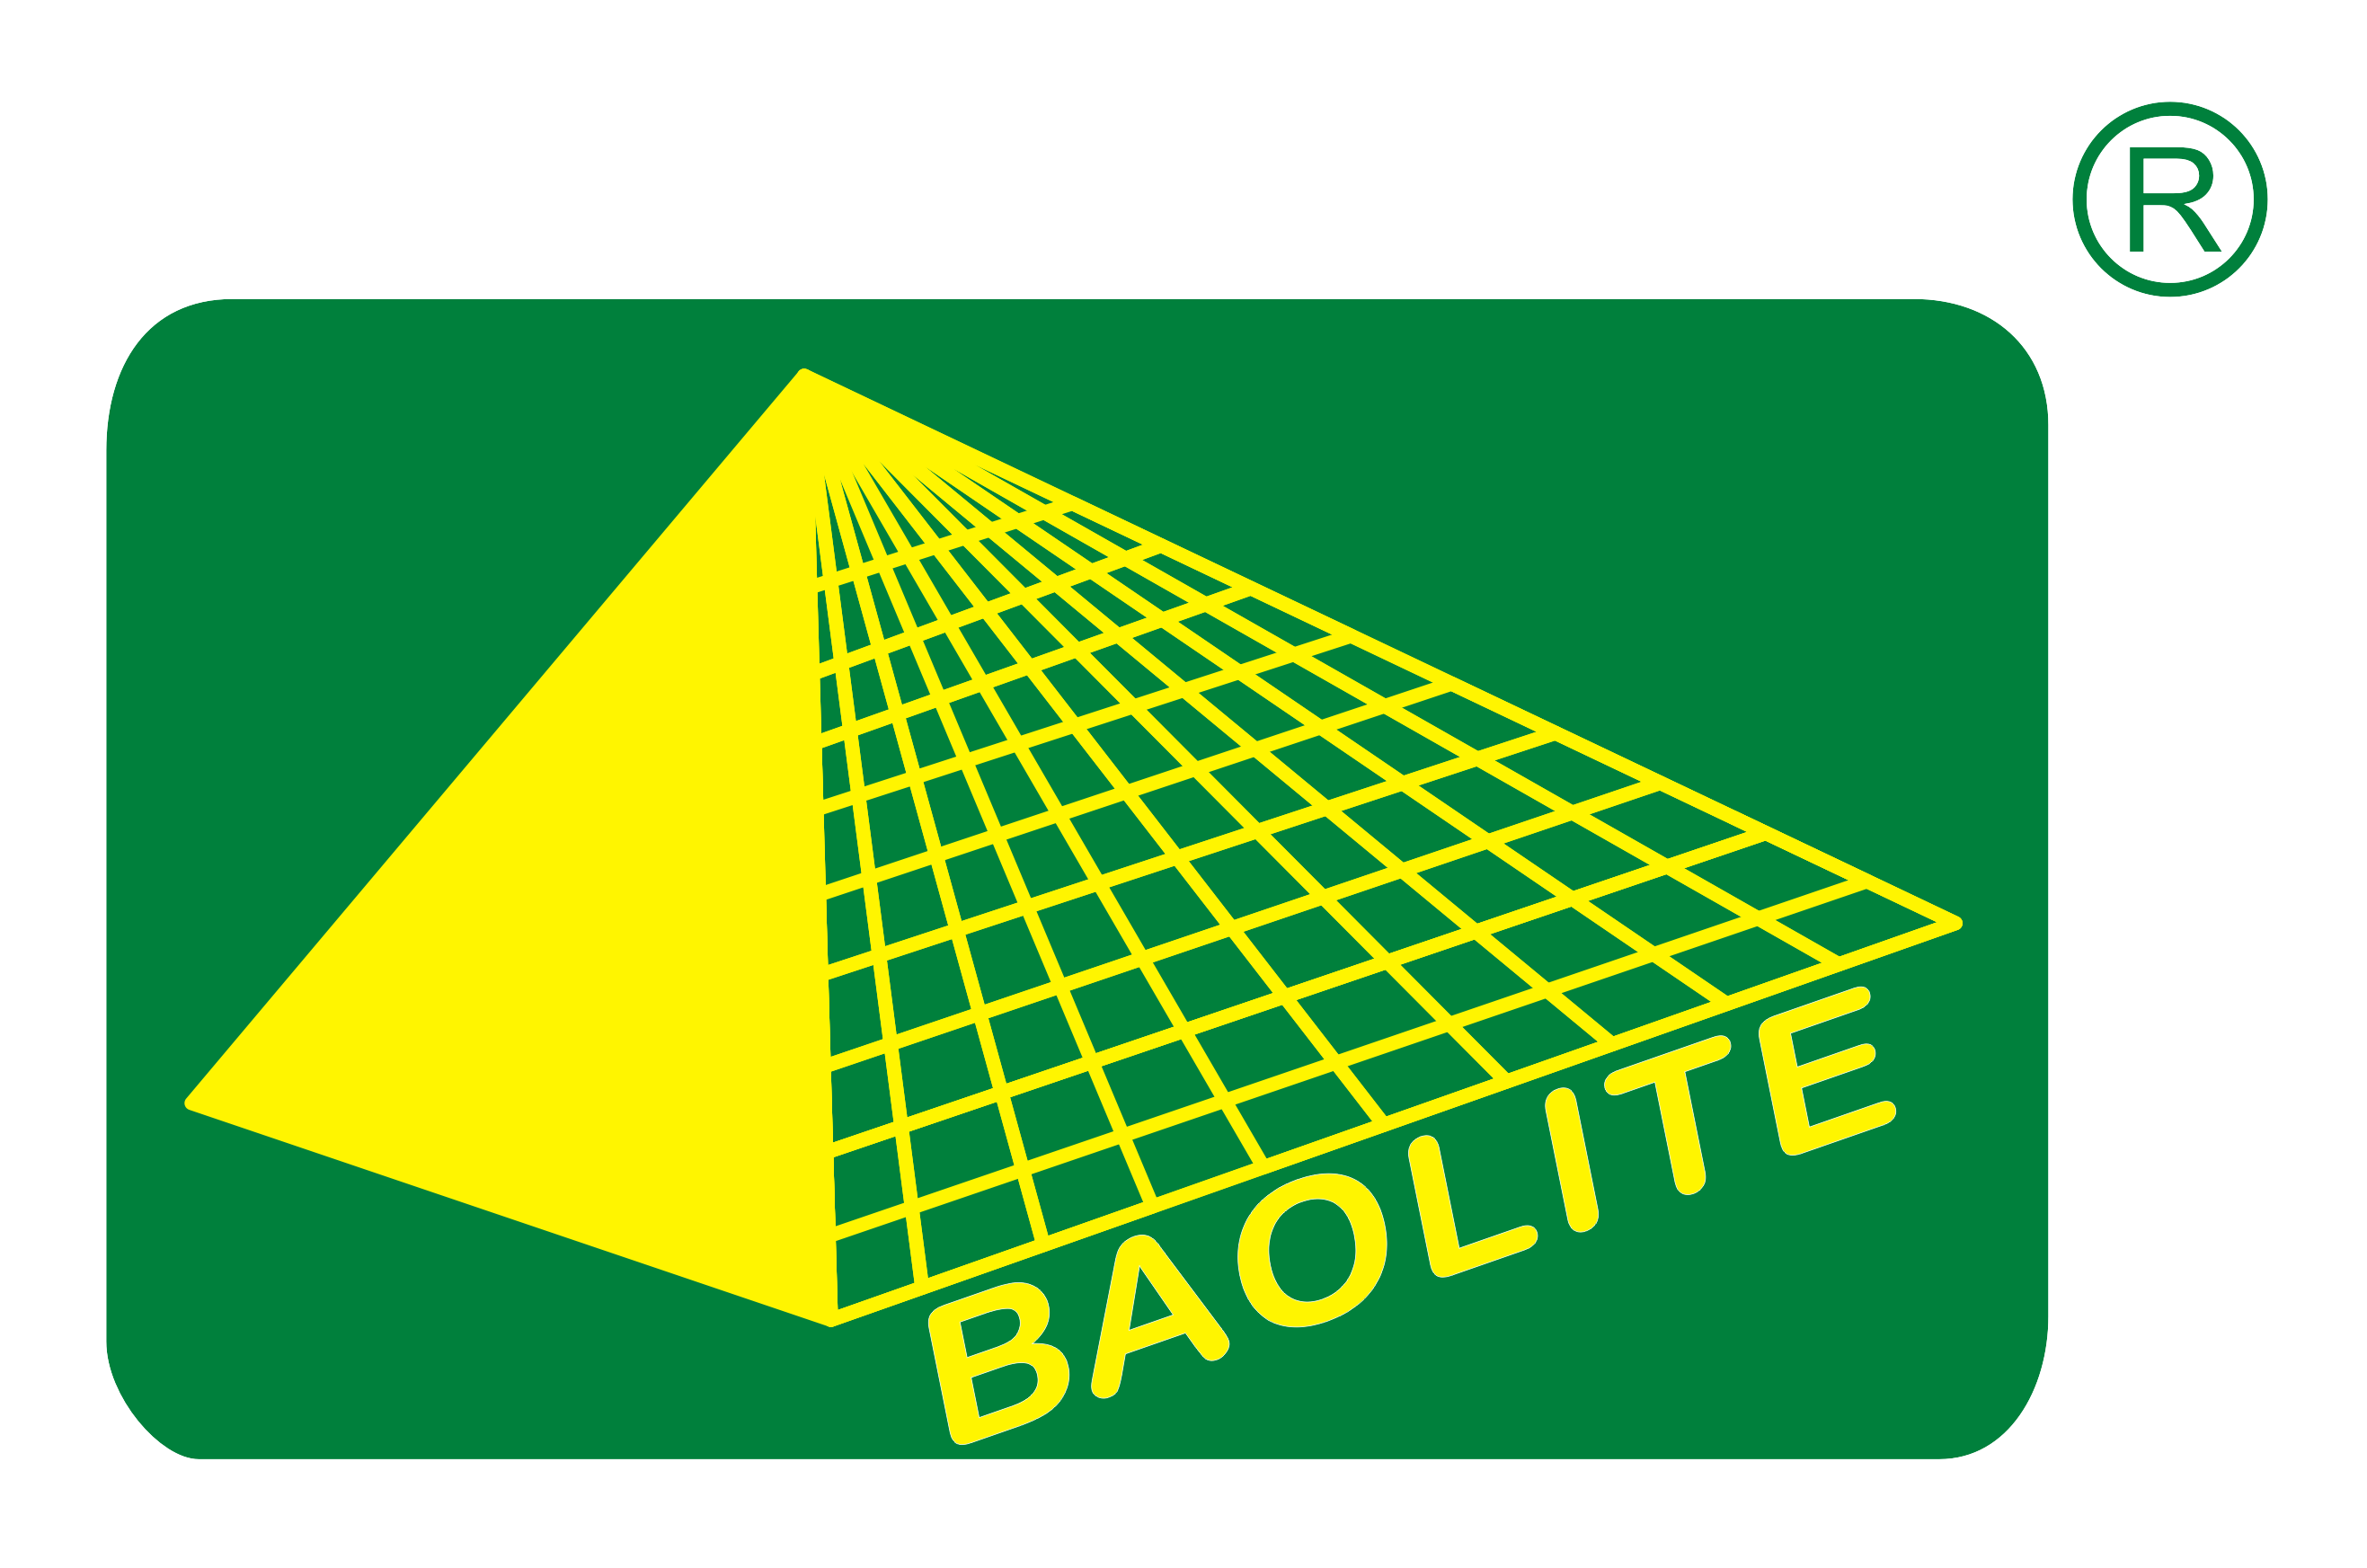 logotip de baolite